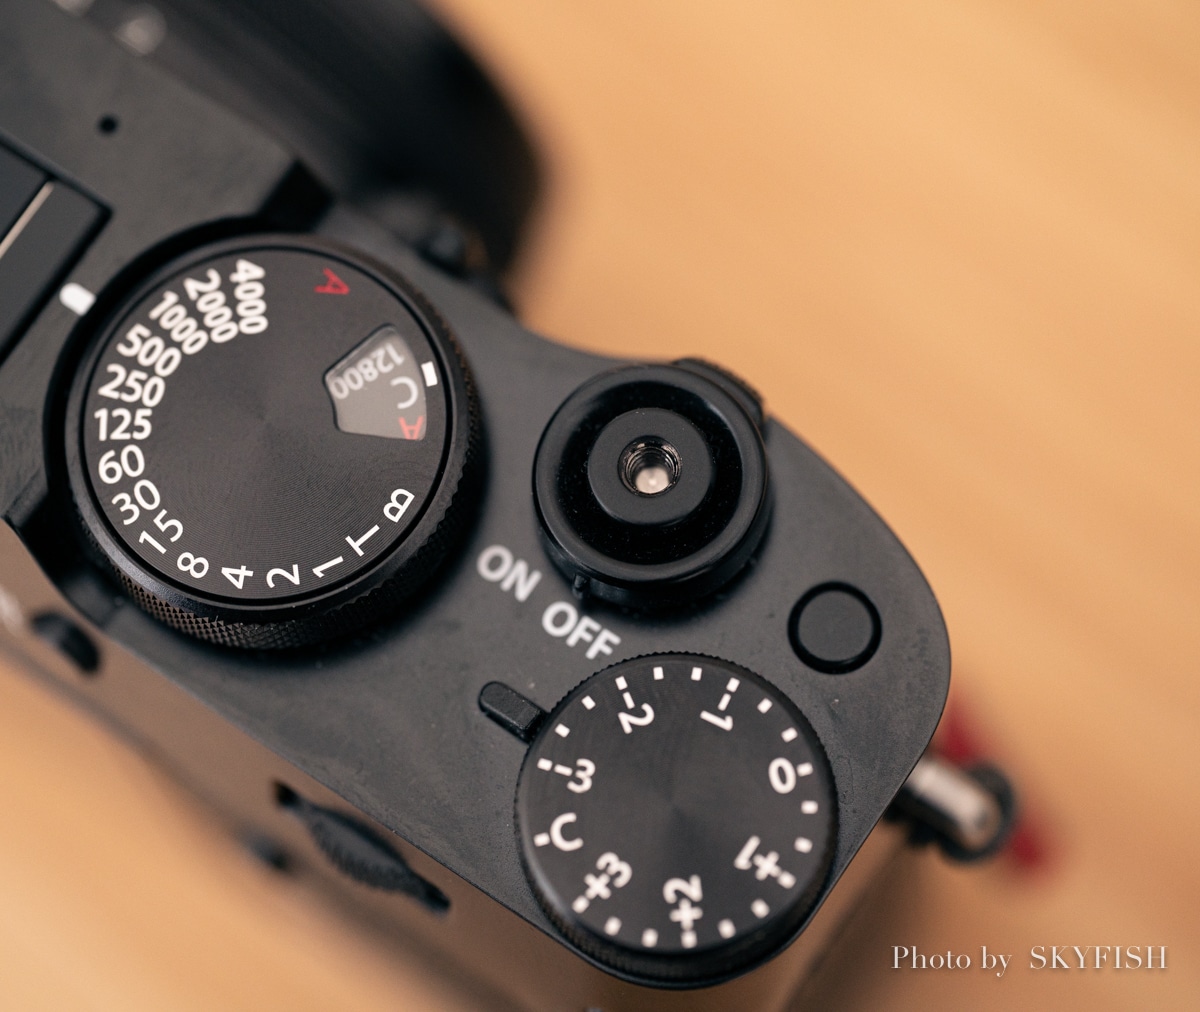 レリーズボタン】一番快適でおすすめなカメラのシャッターボタンはどれか!?【レビュー】 | スカイフィッシュのドローンブログ